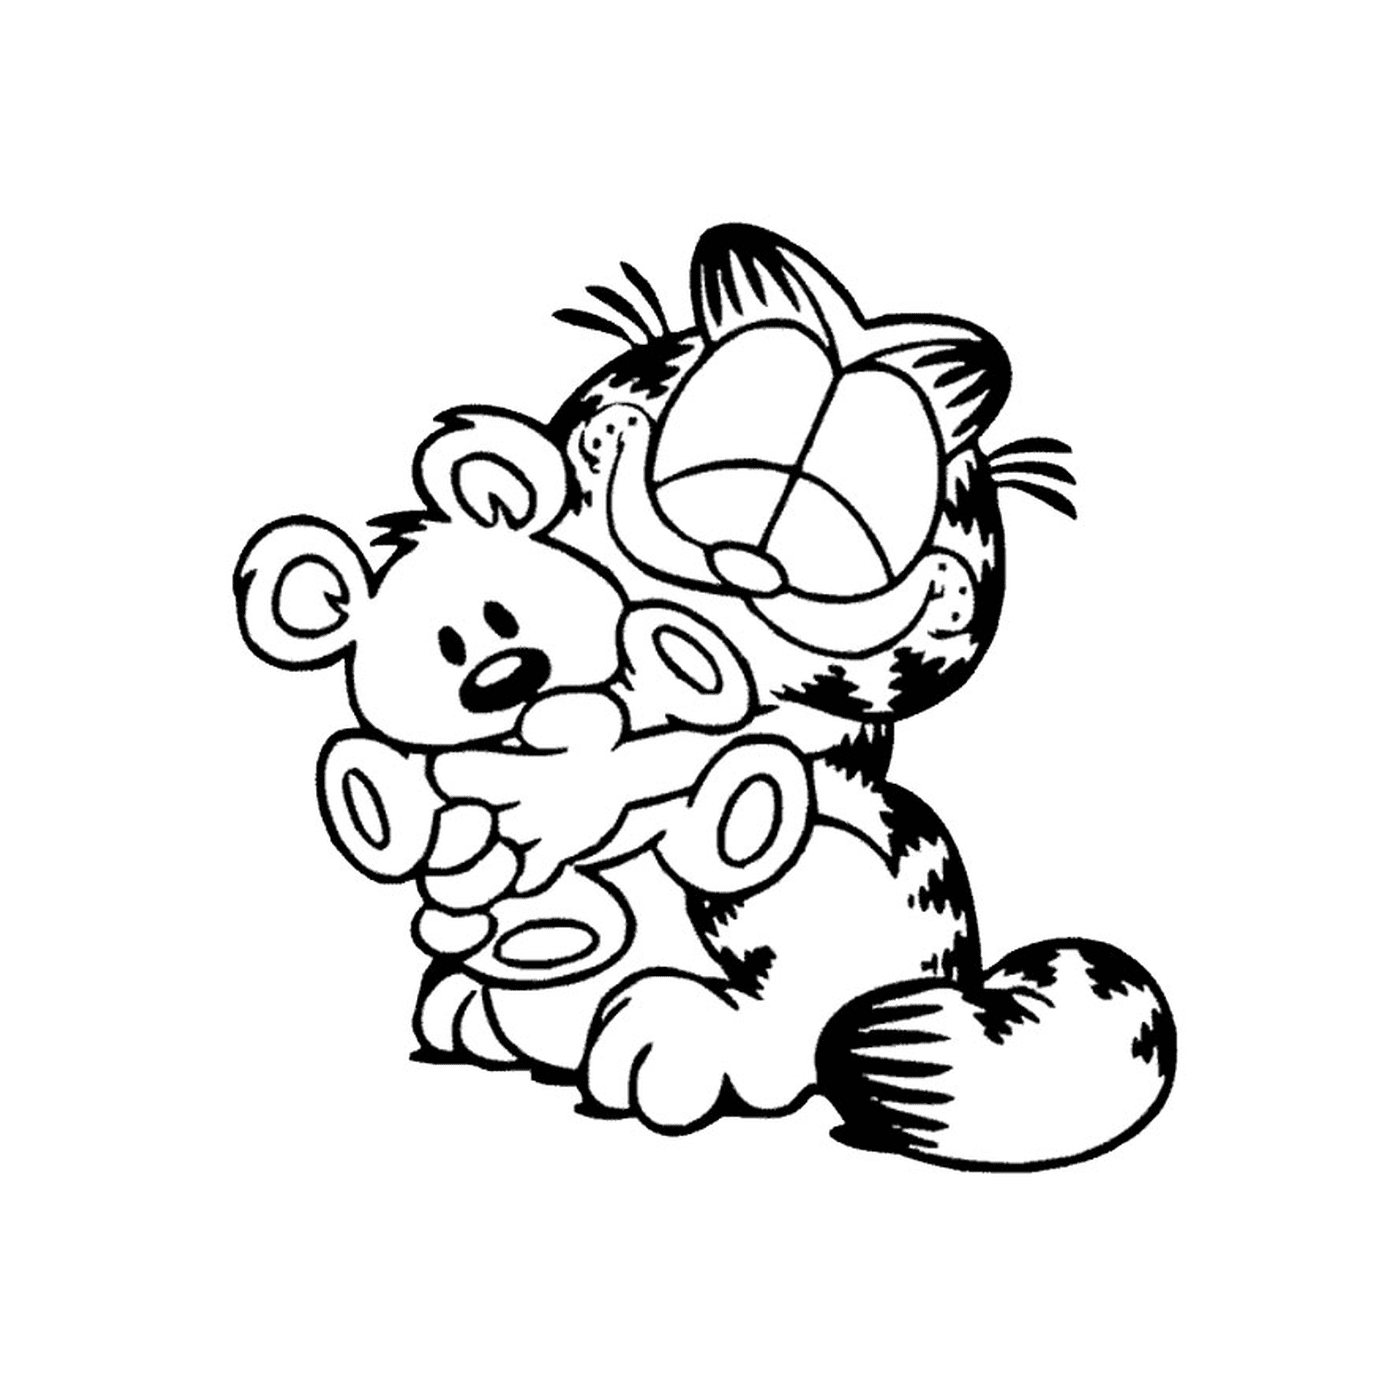  Garfield segurando um ursinho de pelú 